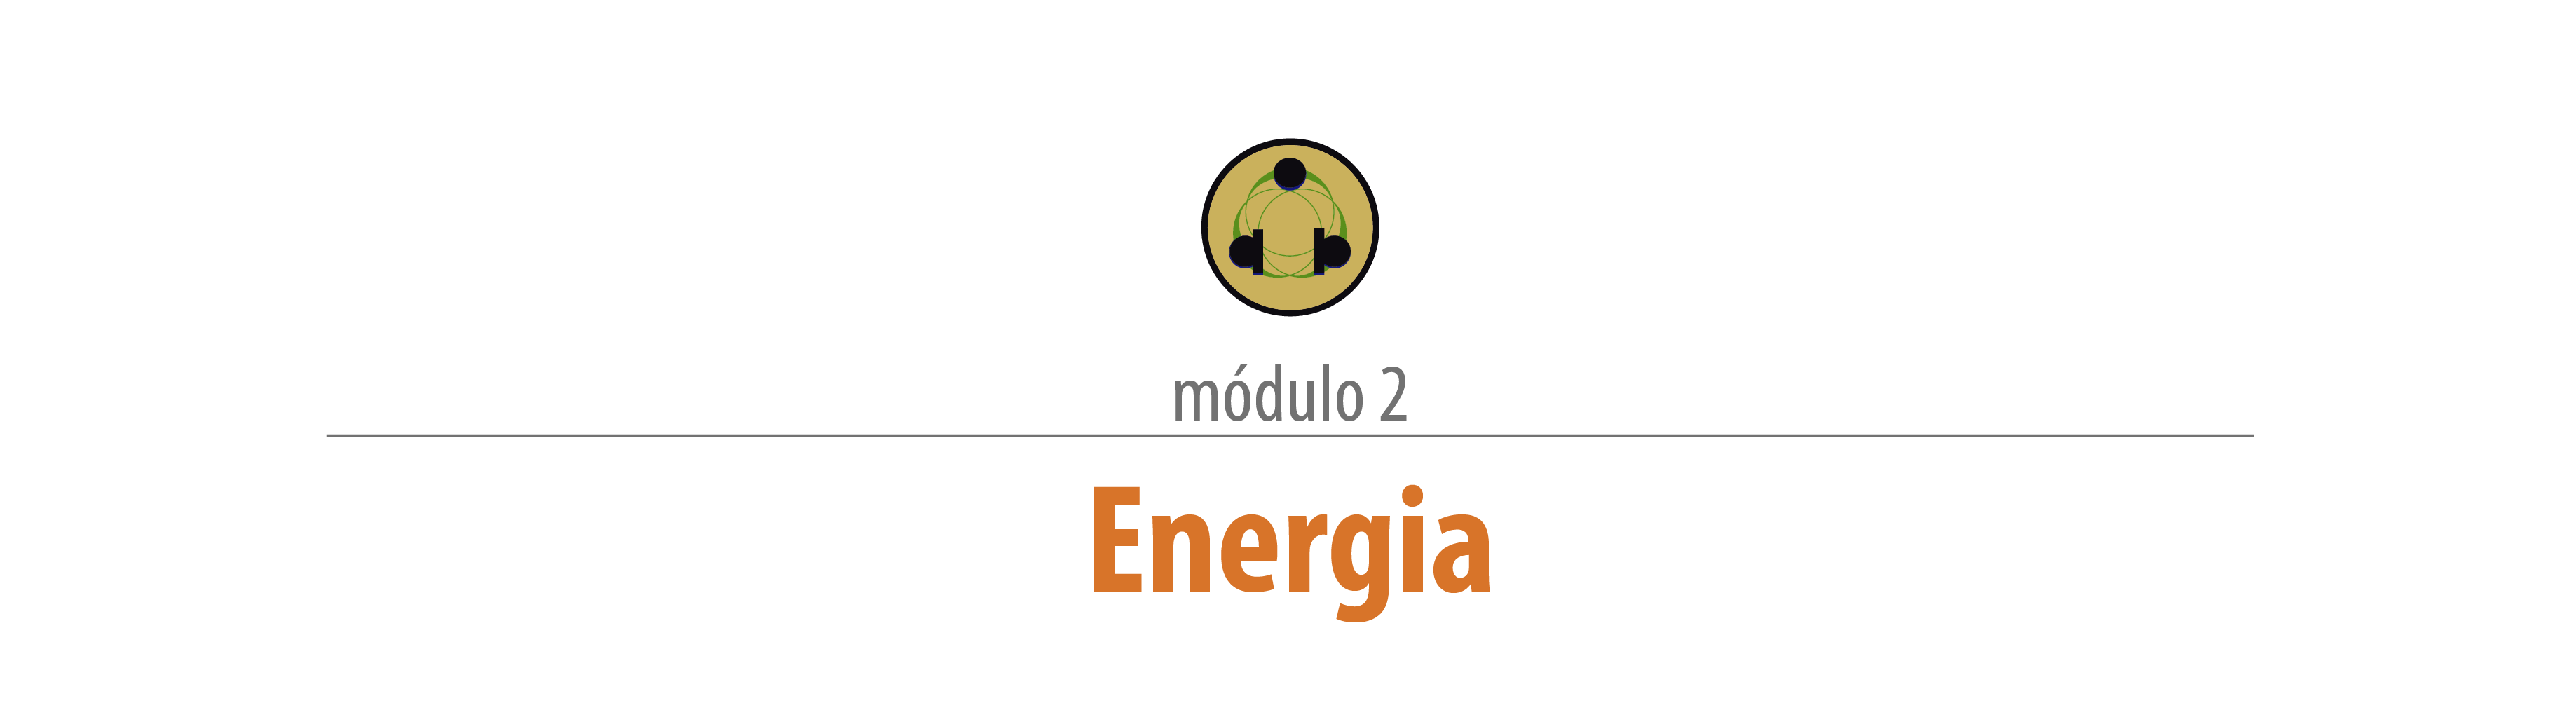 Abertura dos Módulos_pt Energia